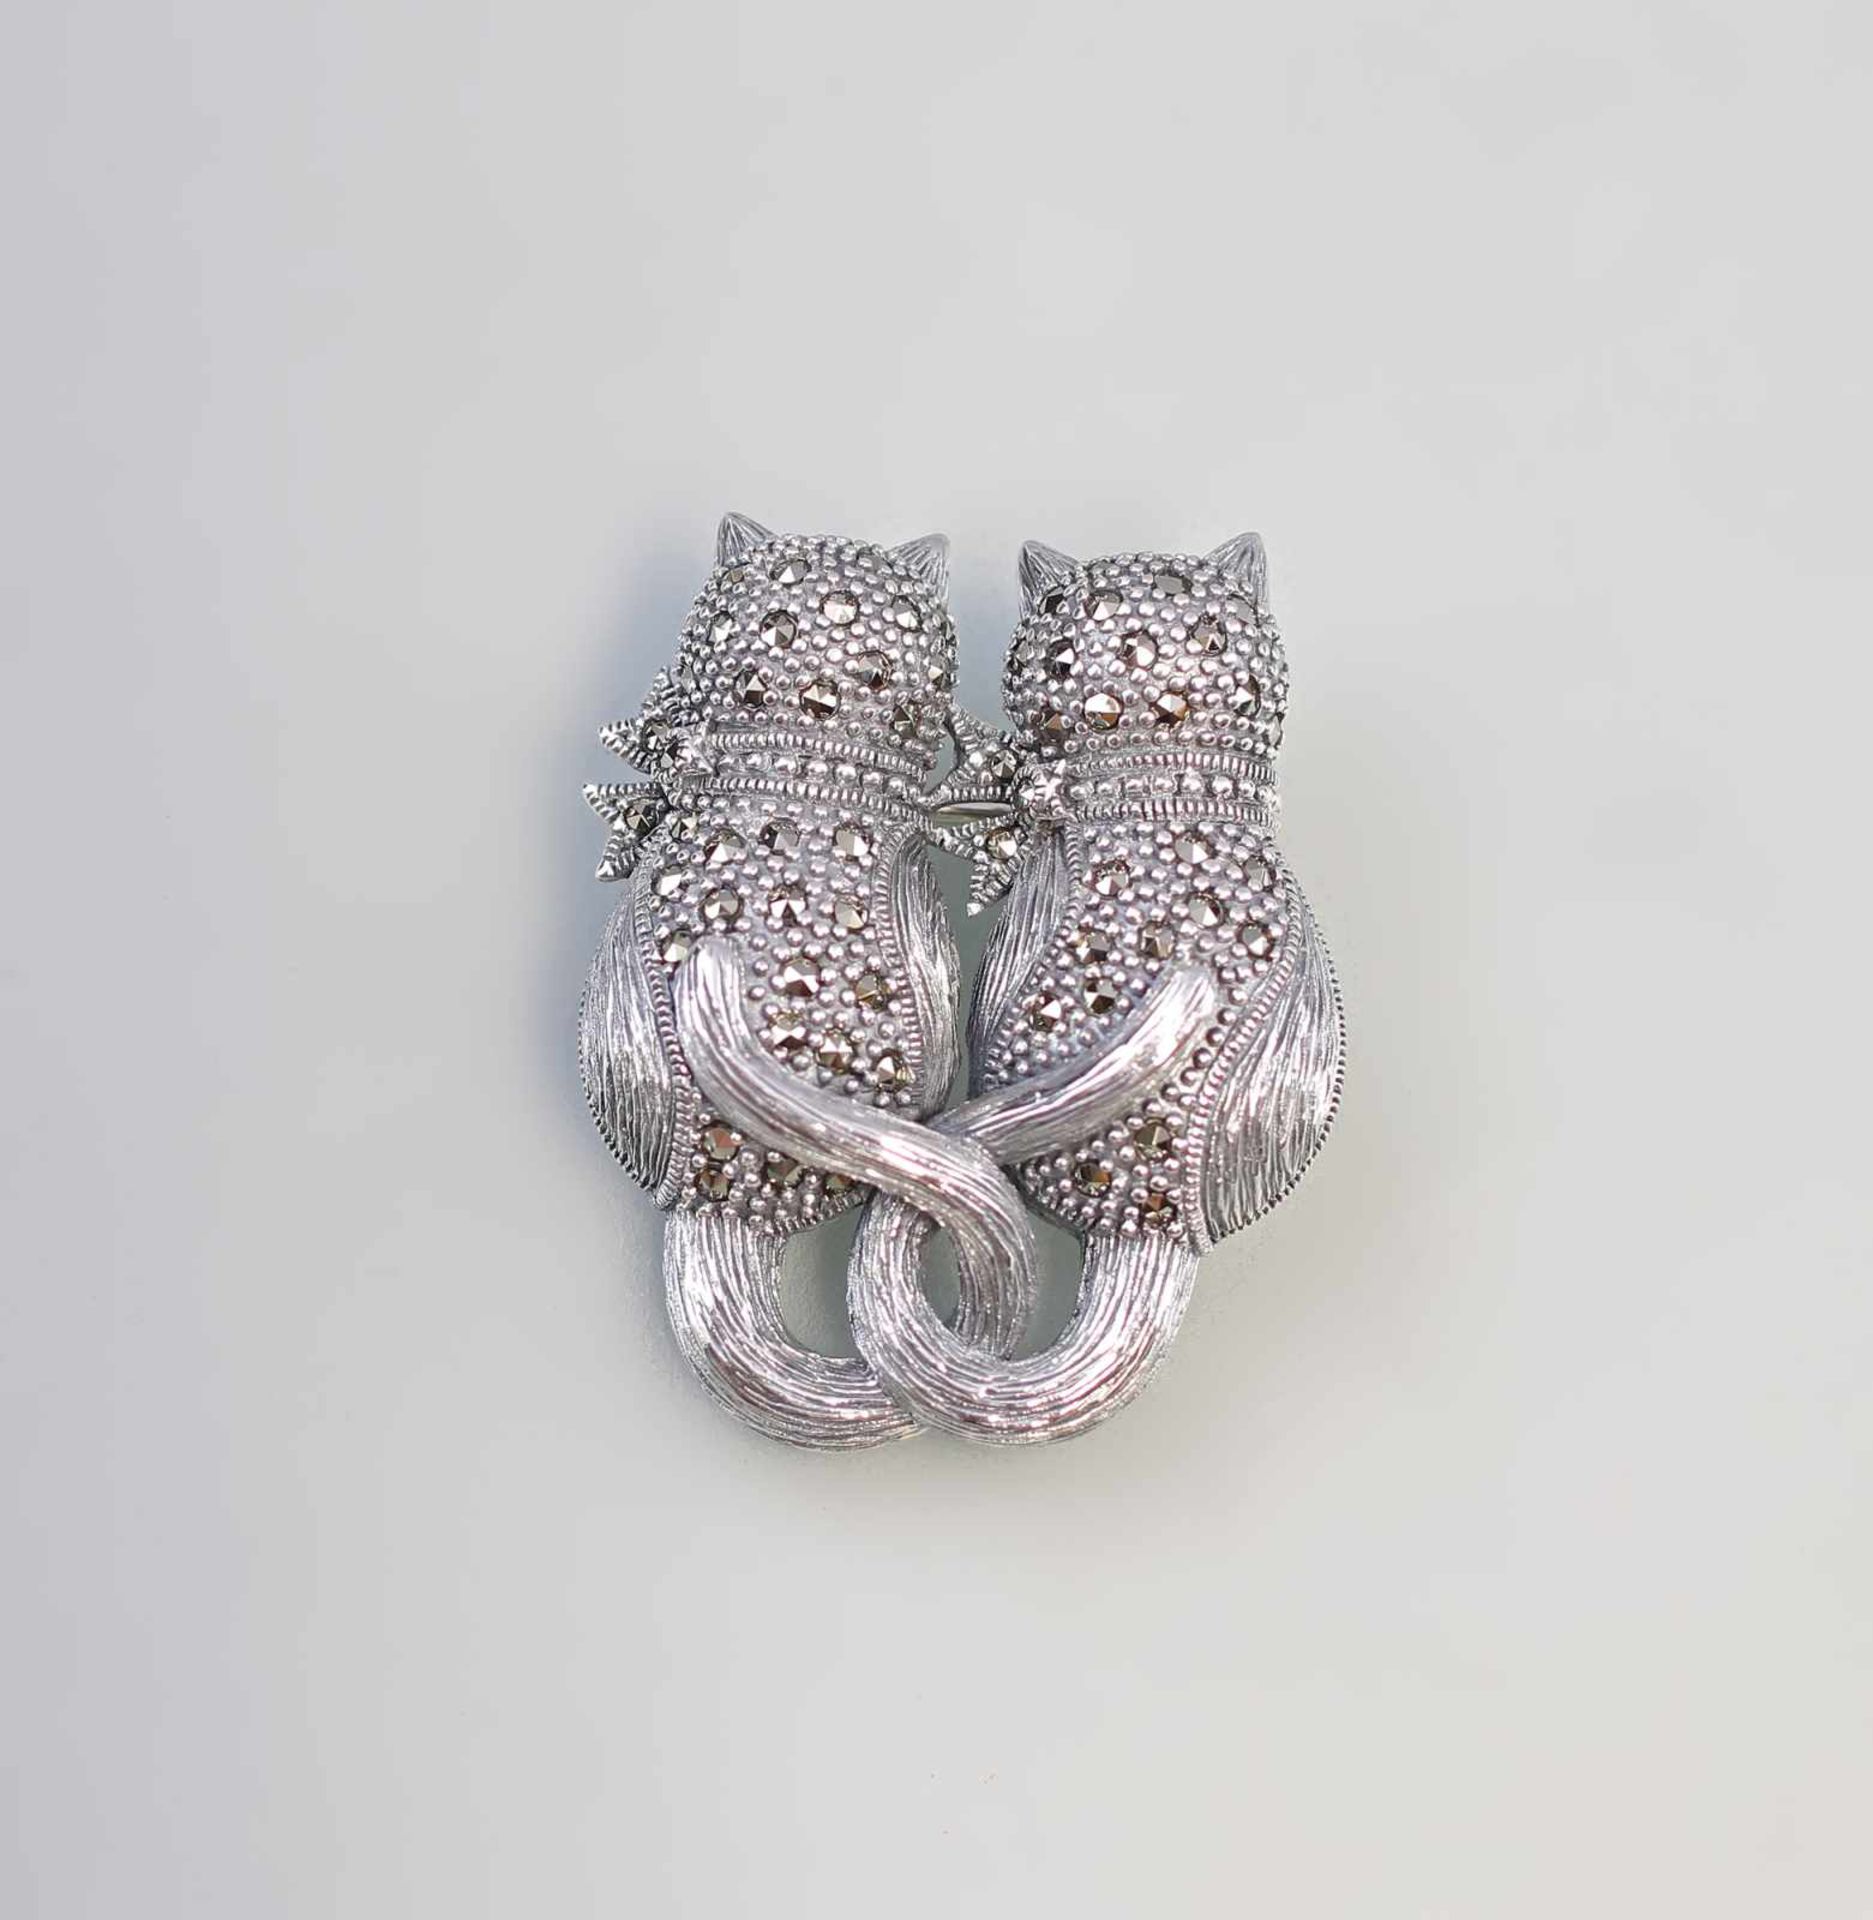 Markasit-Brosche "Verliebte Katzen" 925er Silber, in Gestalt zweier halbplastischer Katzen in